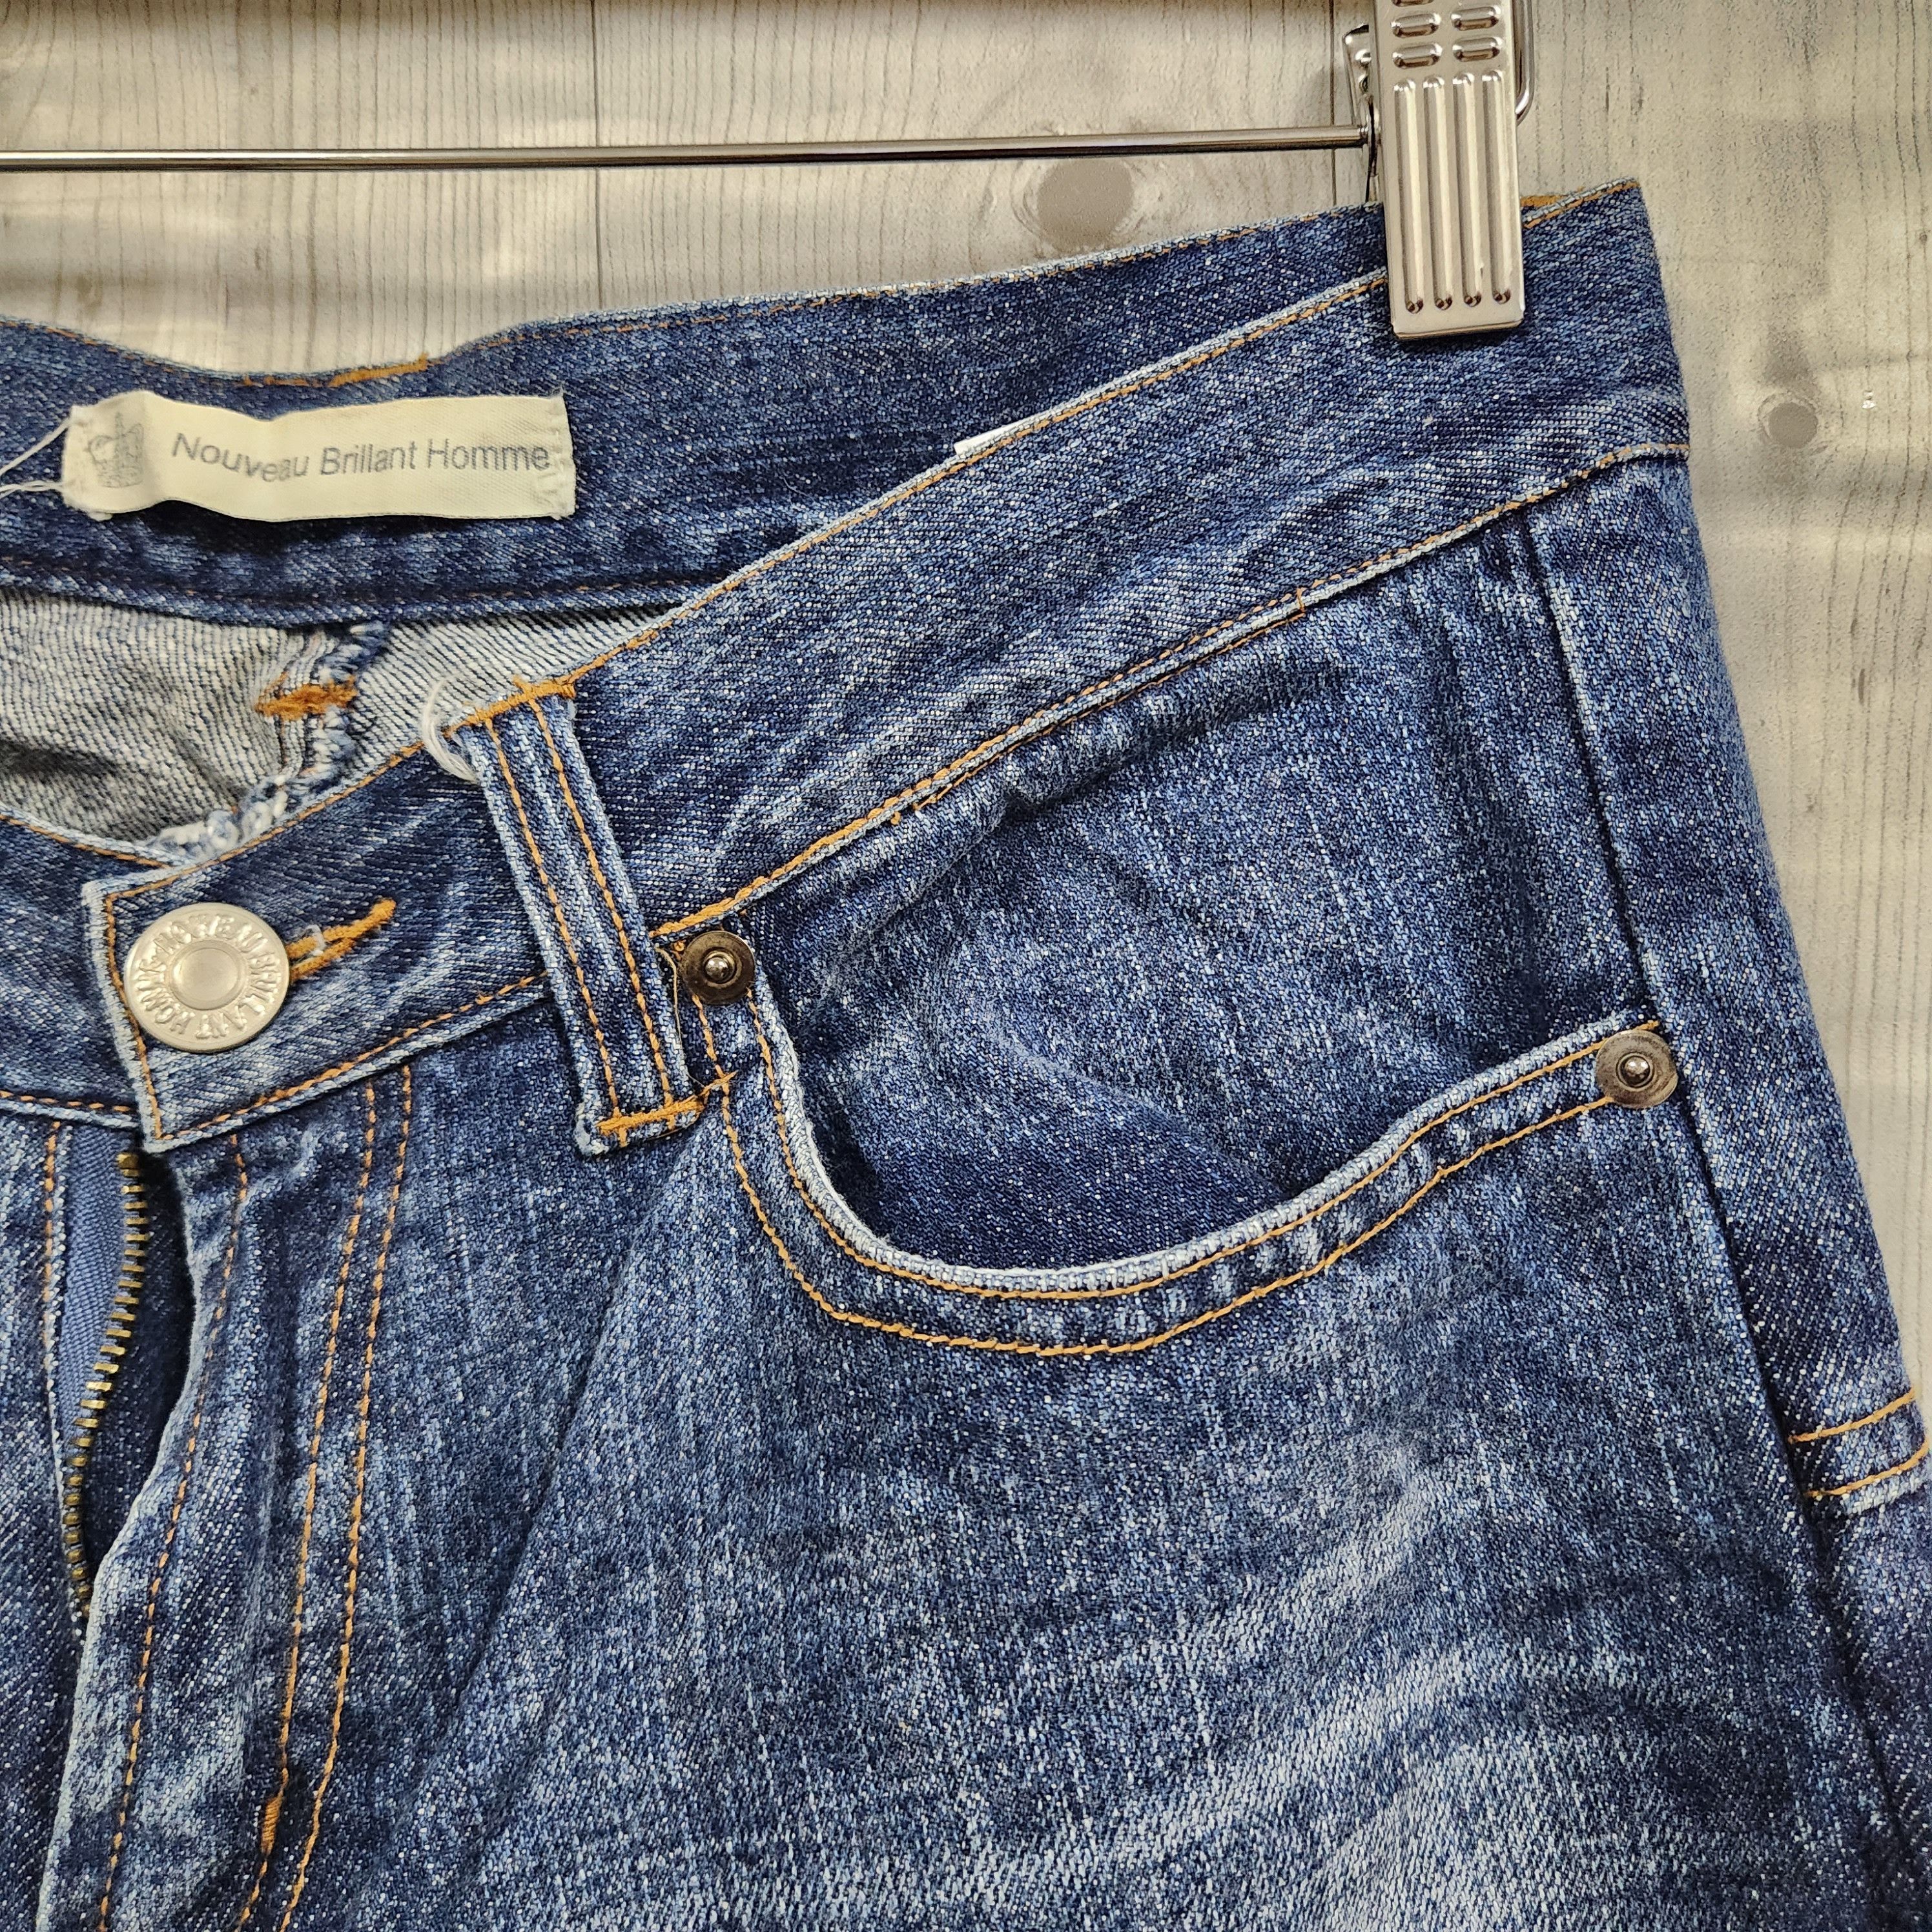 If Six Was Nine - Flare Nouveau Brillant Homme Japan Denim Pockets Jeans - 4